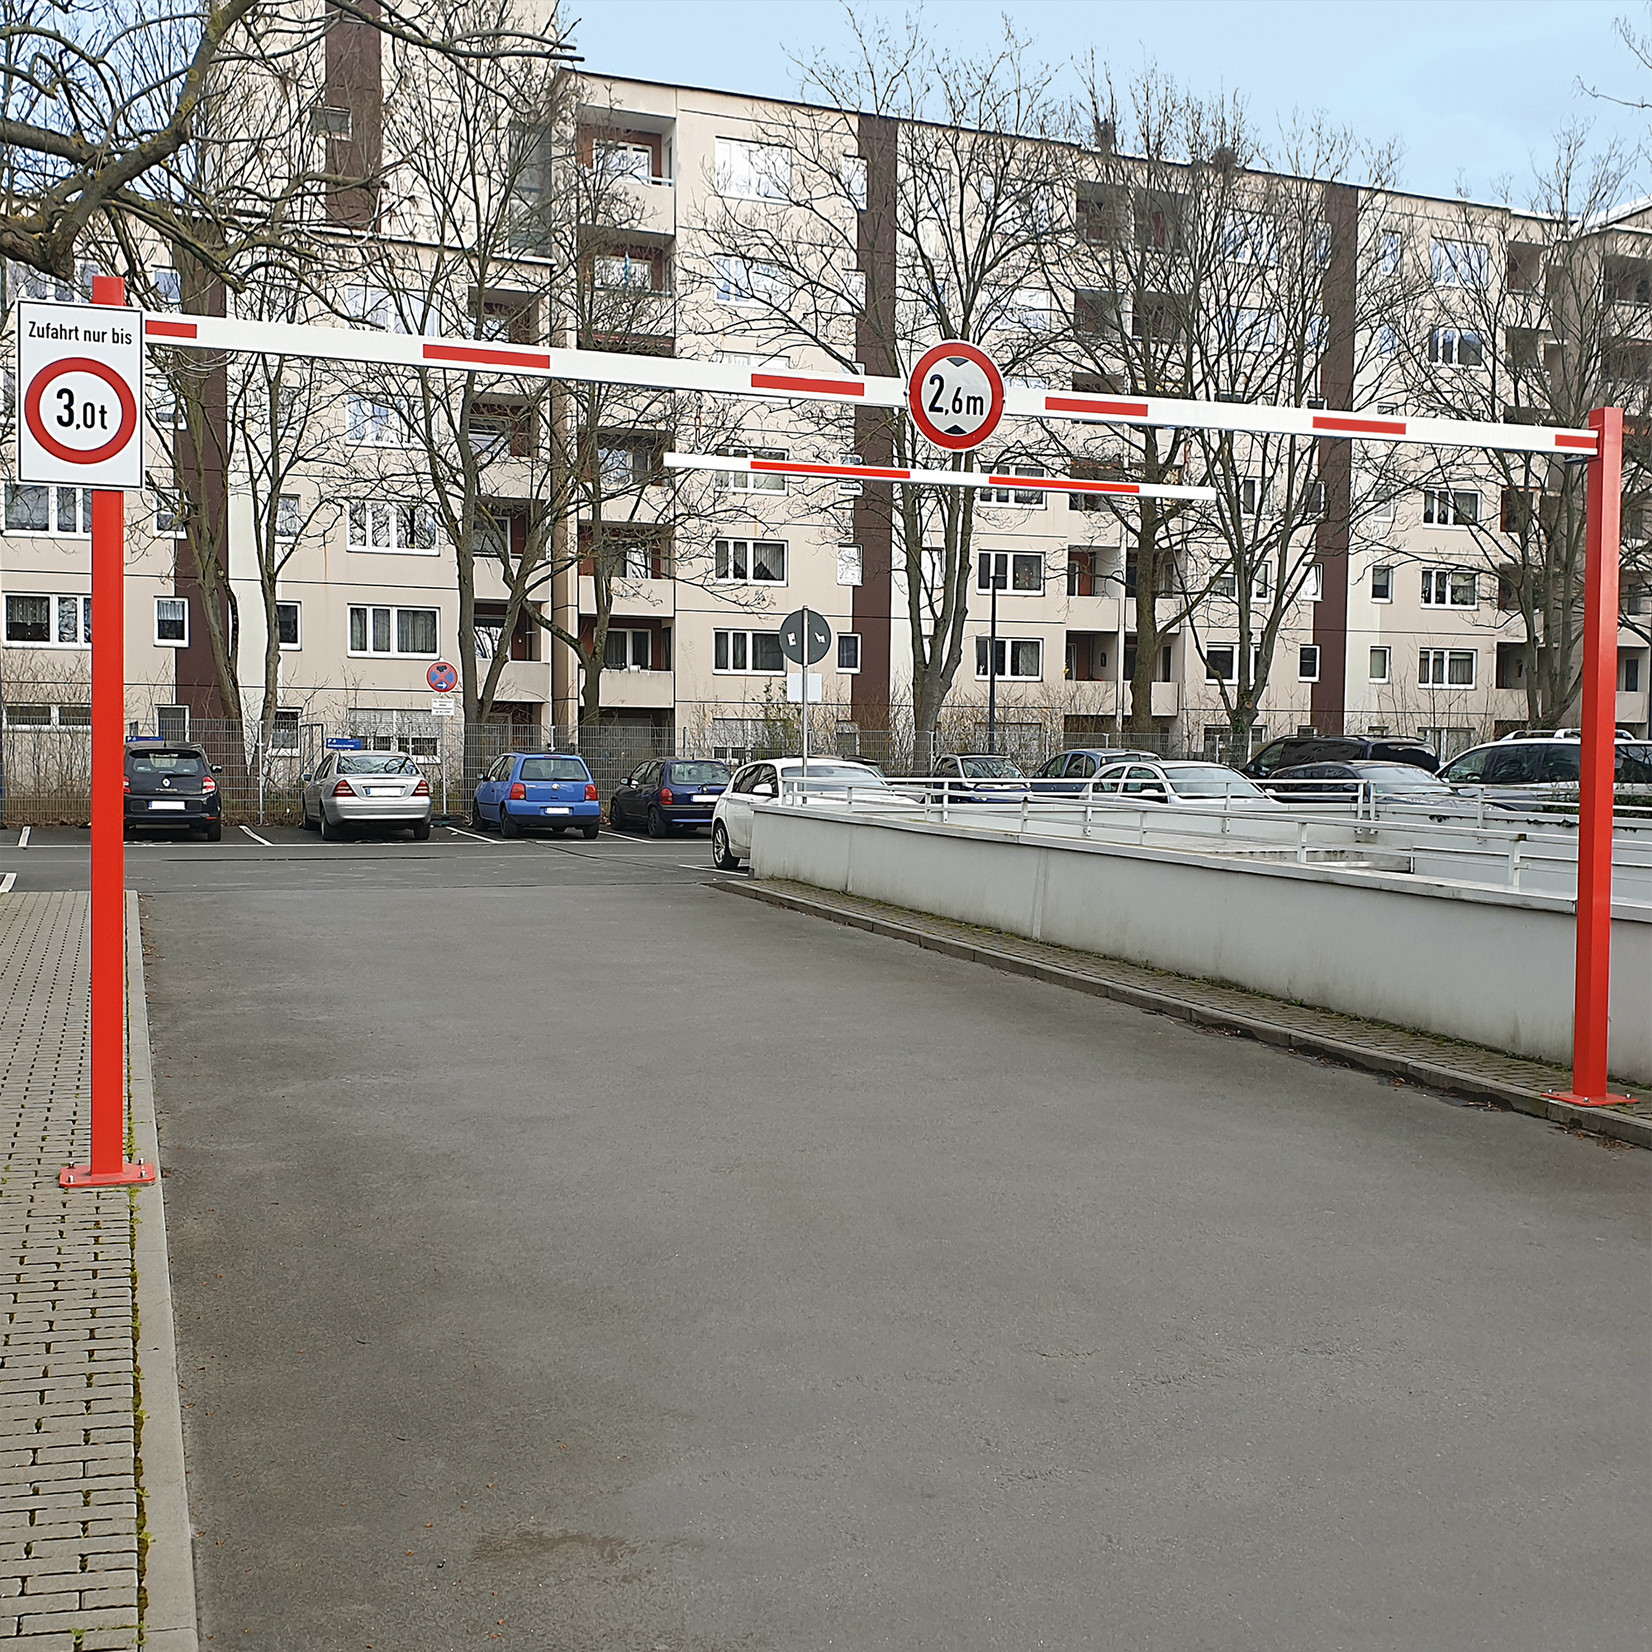 COMPACT doorgang- en hoogtebegrenzer - 10230 x 3010 mm - rood/wit